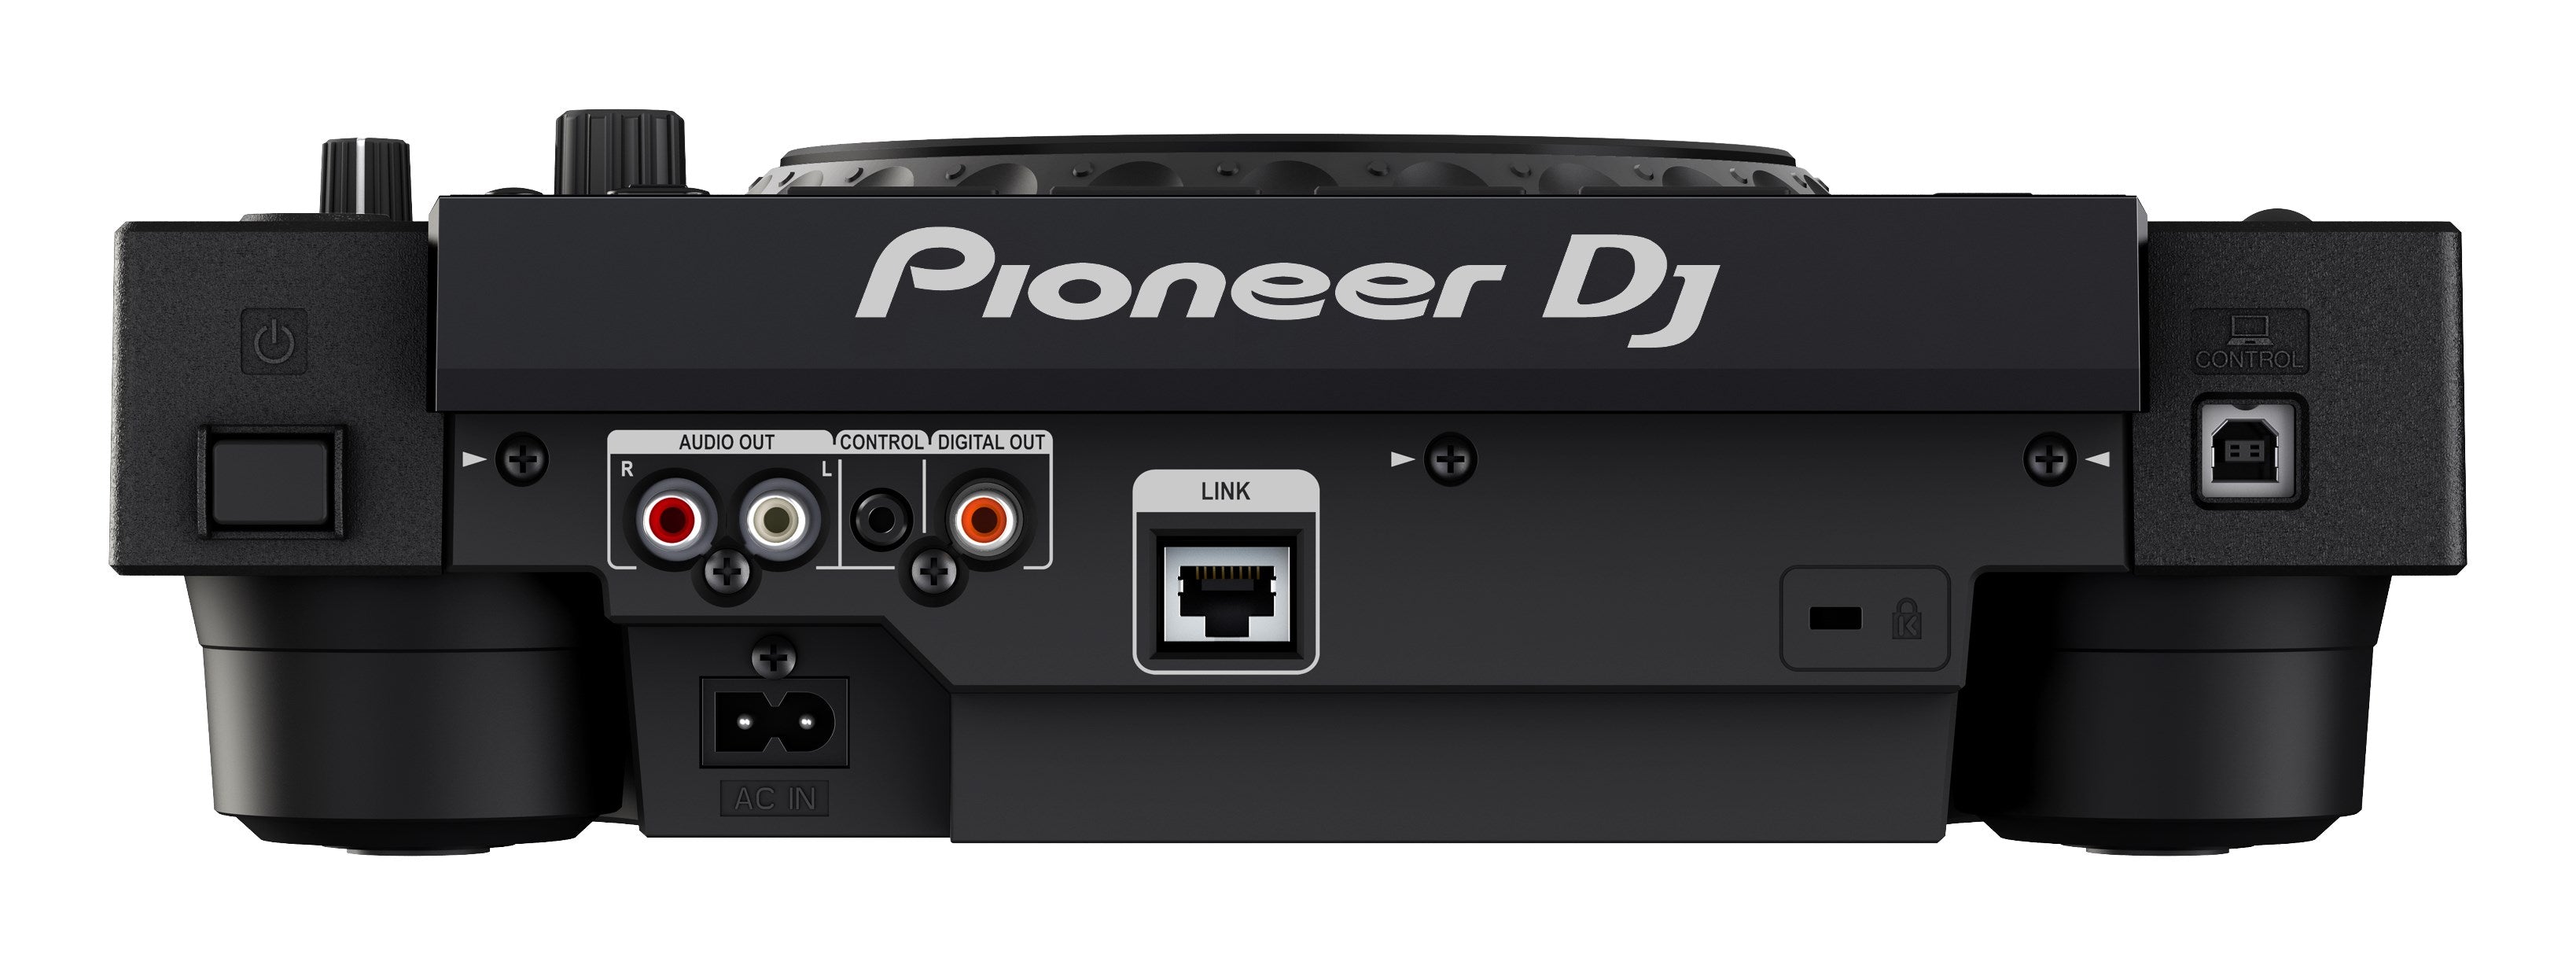 CDJ-900NXS – Pioneer DJ Store